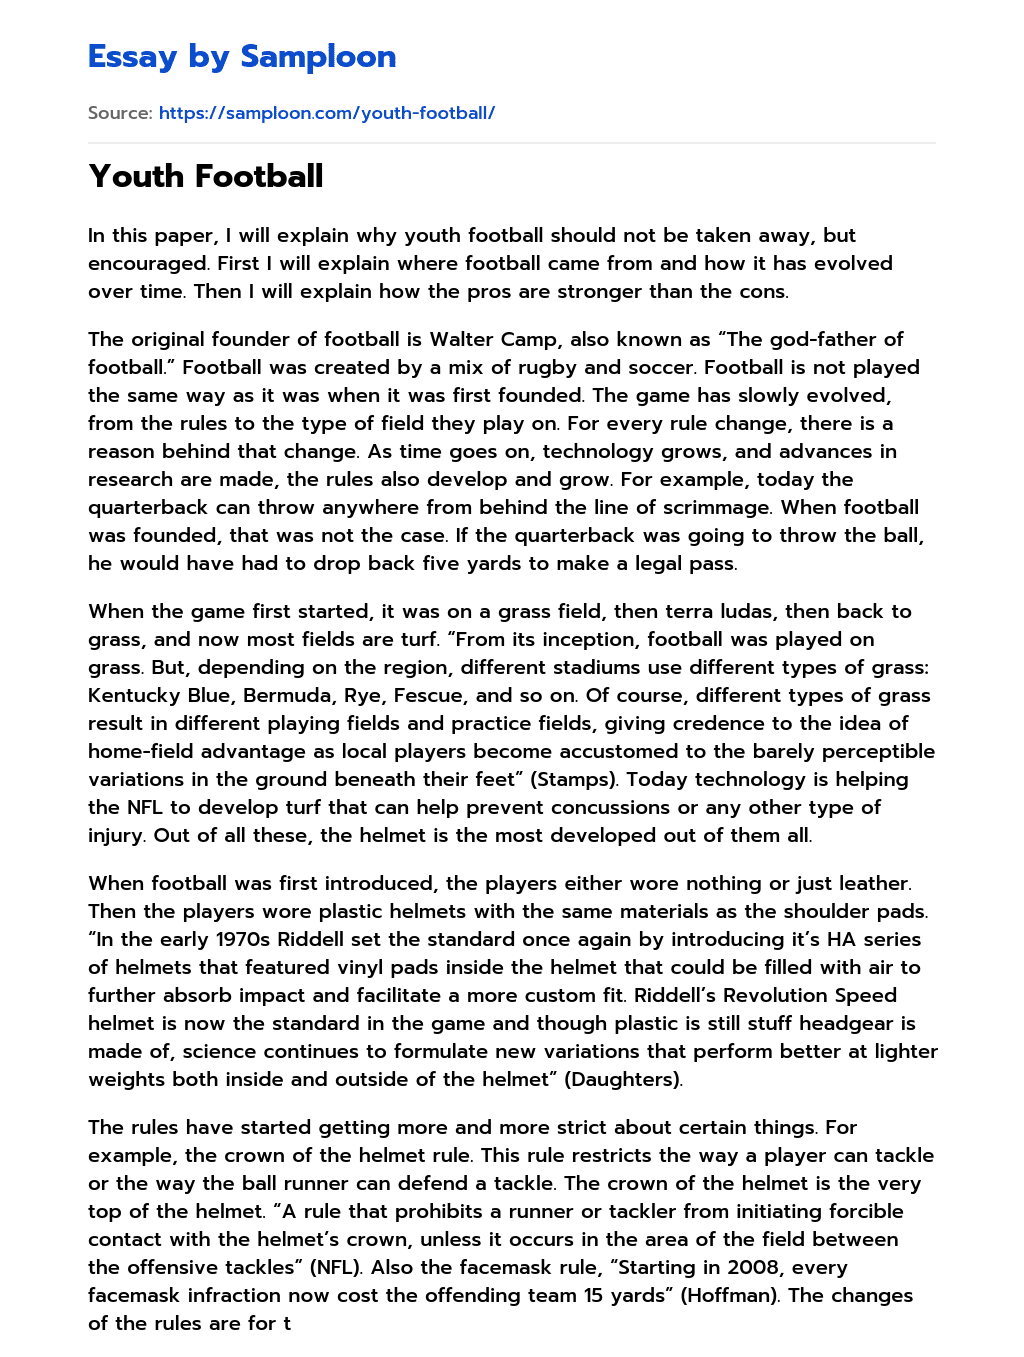 Youth Football essay